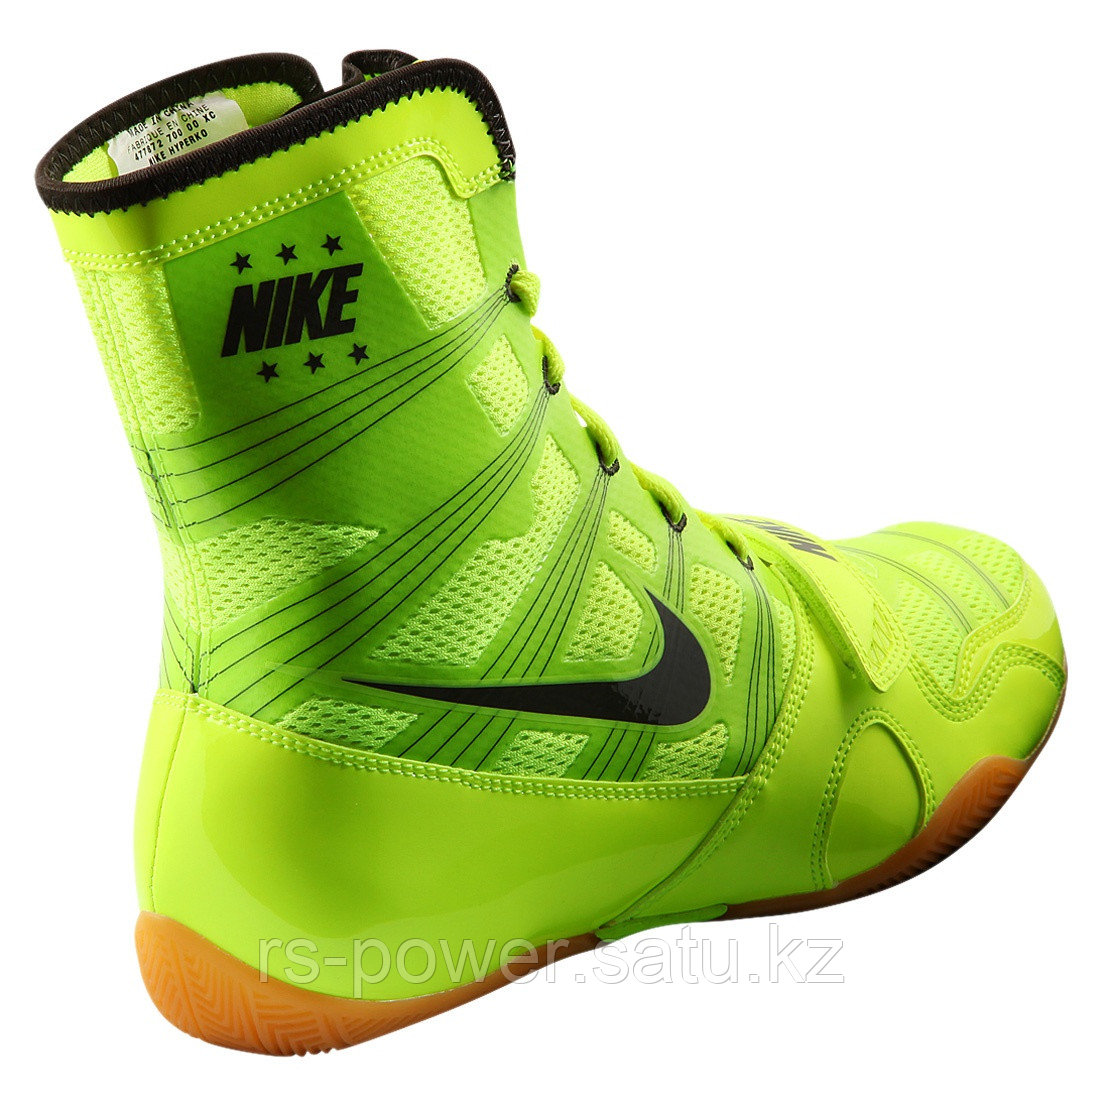 Боксерская Обувь Nike (id 105769394)